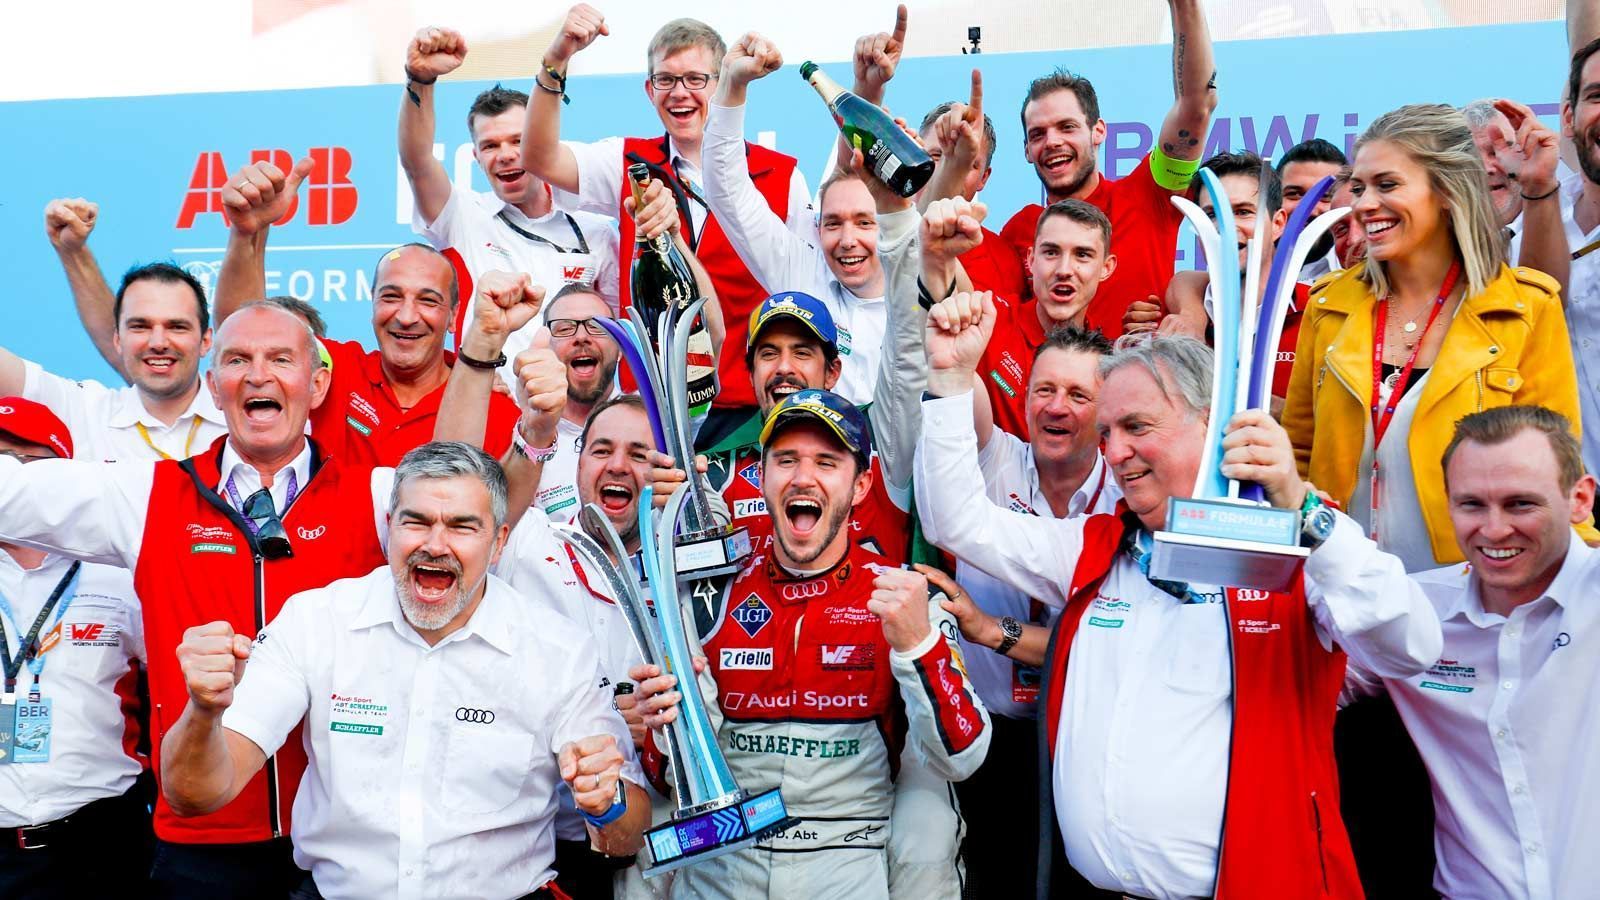 
                <strong>Kann Audi den Doppelsieg wiederholen?</strong><br>
                Hinter Abt fuhr sein Teamkollege Lucas di Grassi vergangenes Jahr auf Rang zwei und sorgte damit für einen Doppelsieg des Teams "Audi Sport Abt Schaeffler". Können die beiden ihren Erfolg aus dem letzten Jahr wiederholen?
              